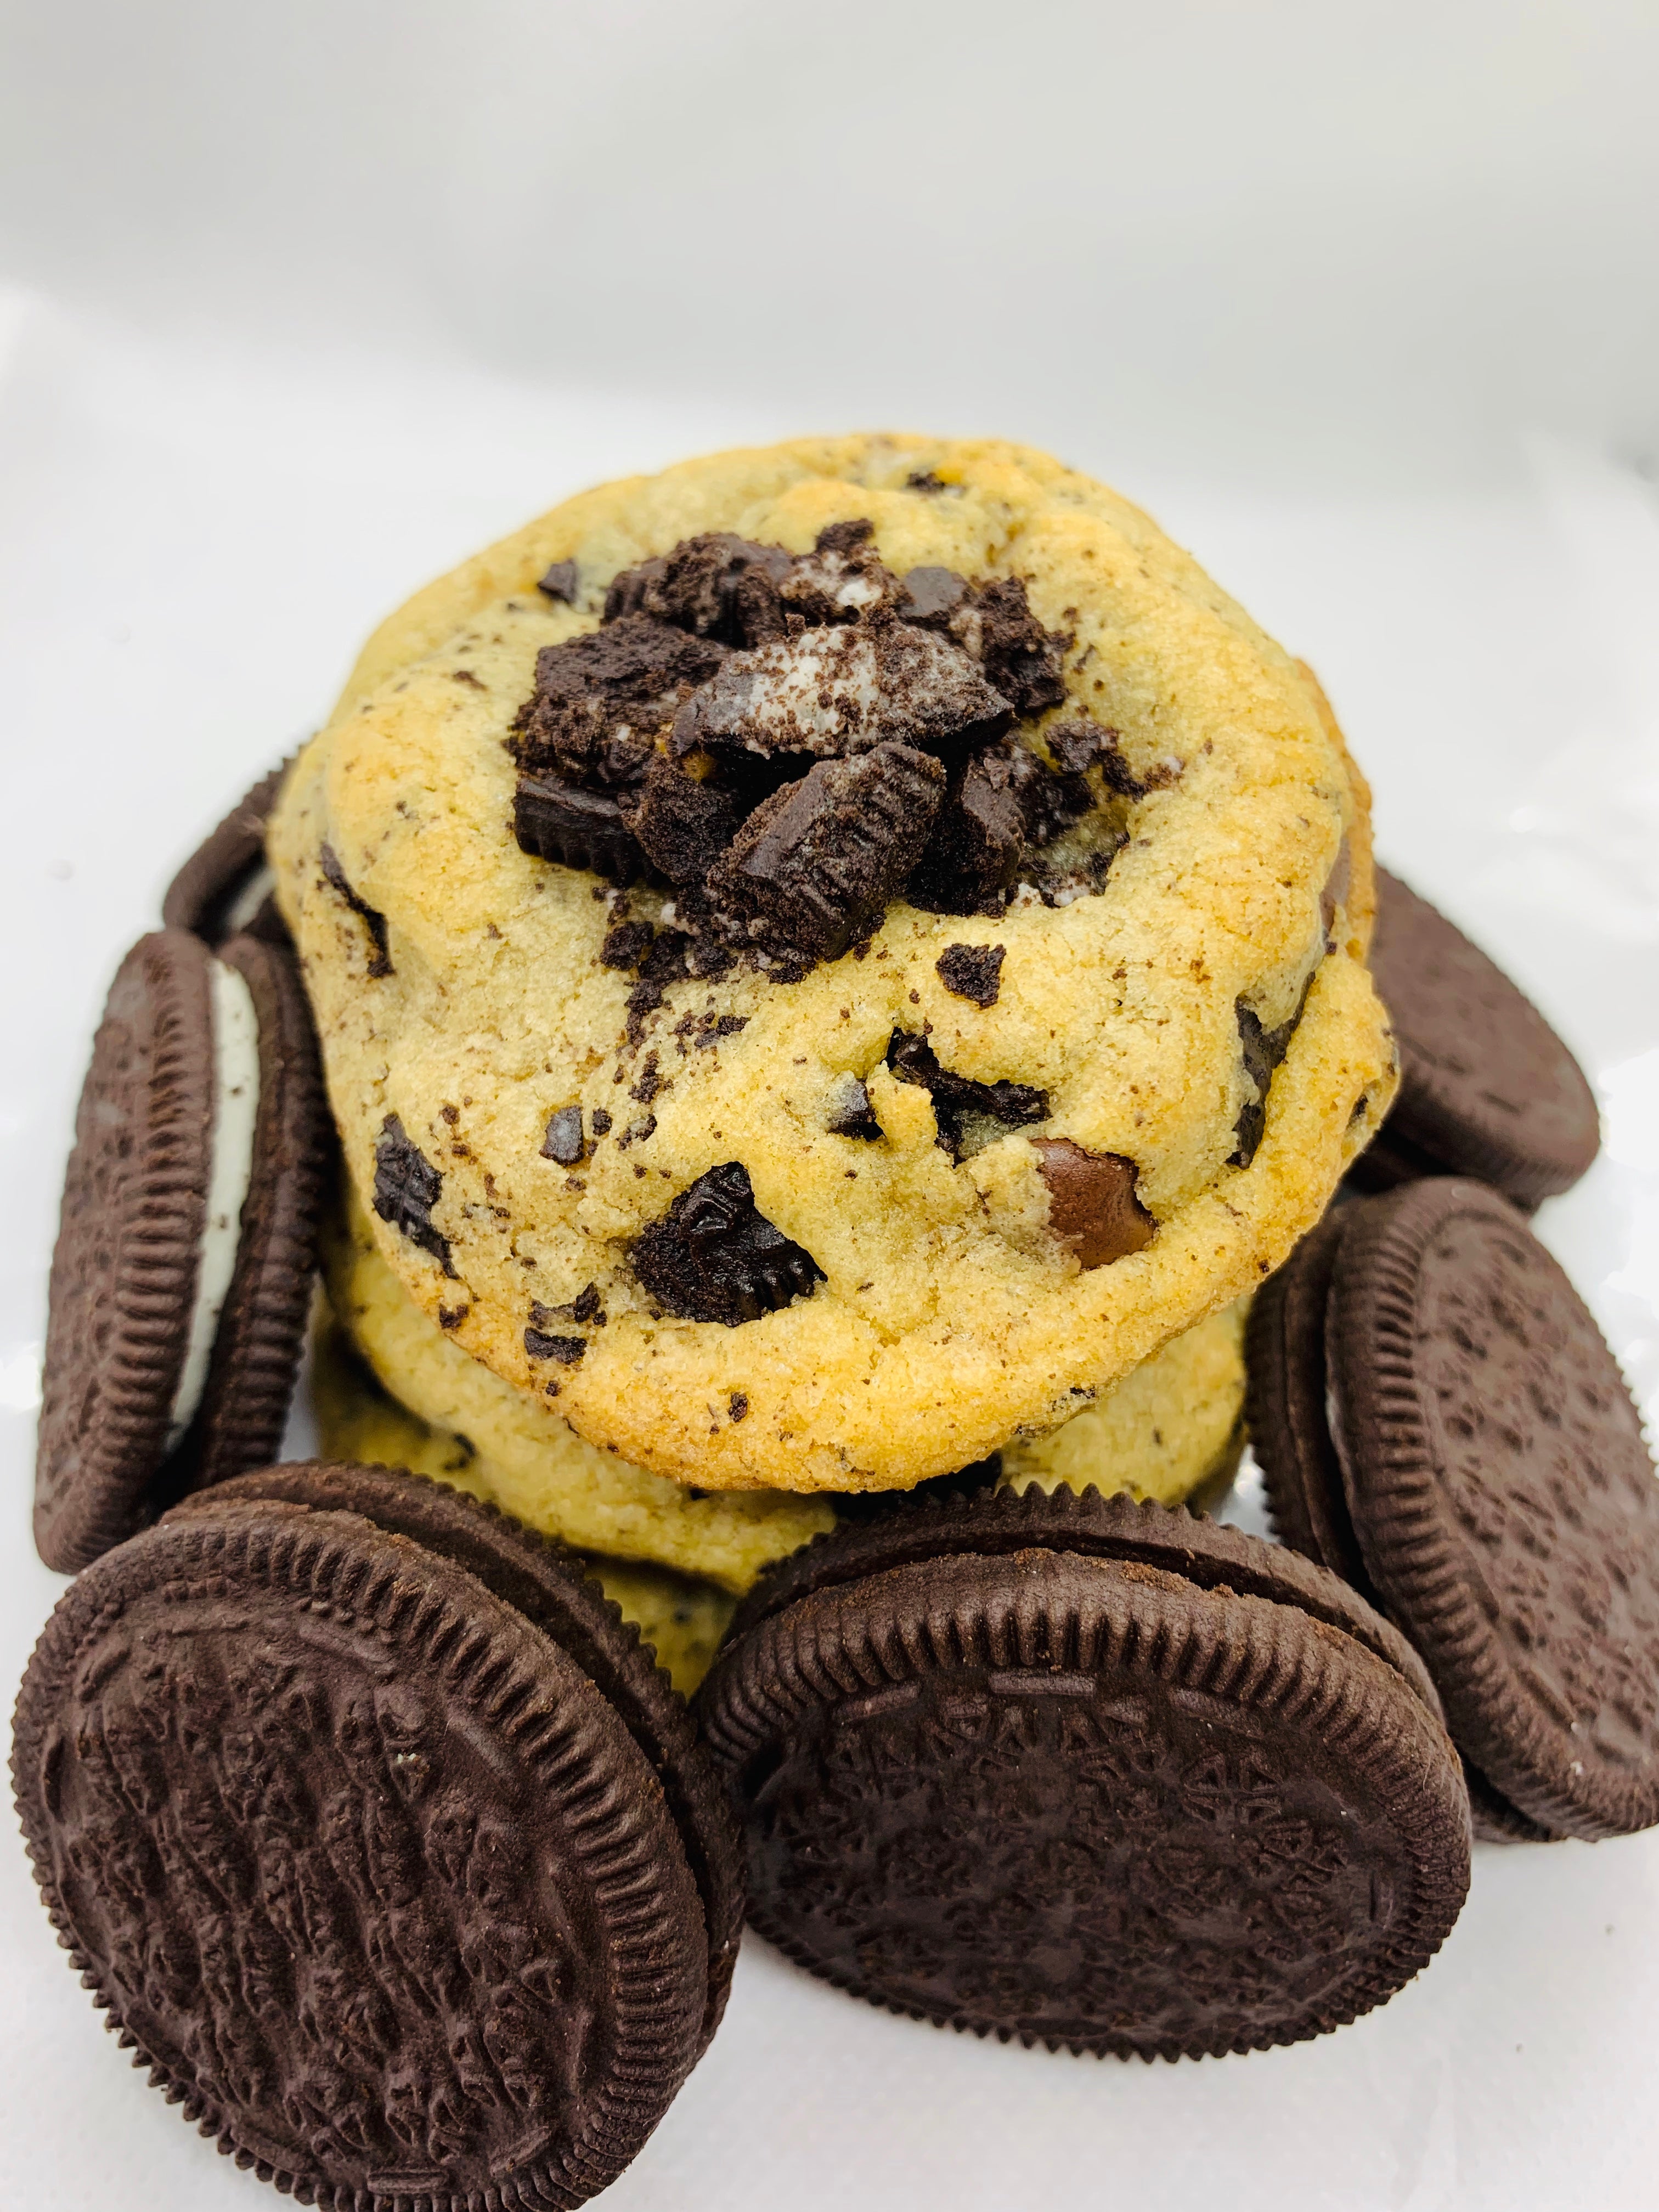 1 dz Cookies and Cream Cookies - Cookies